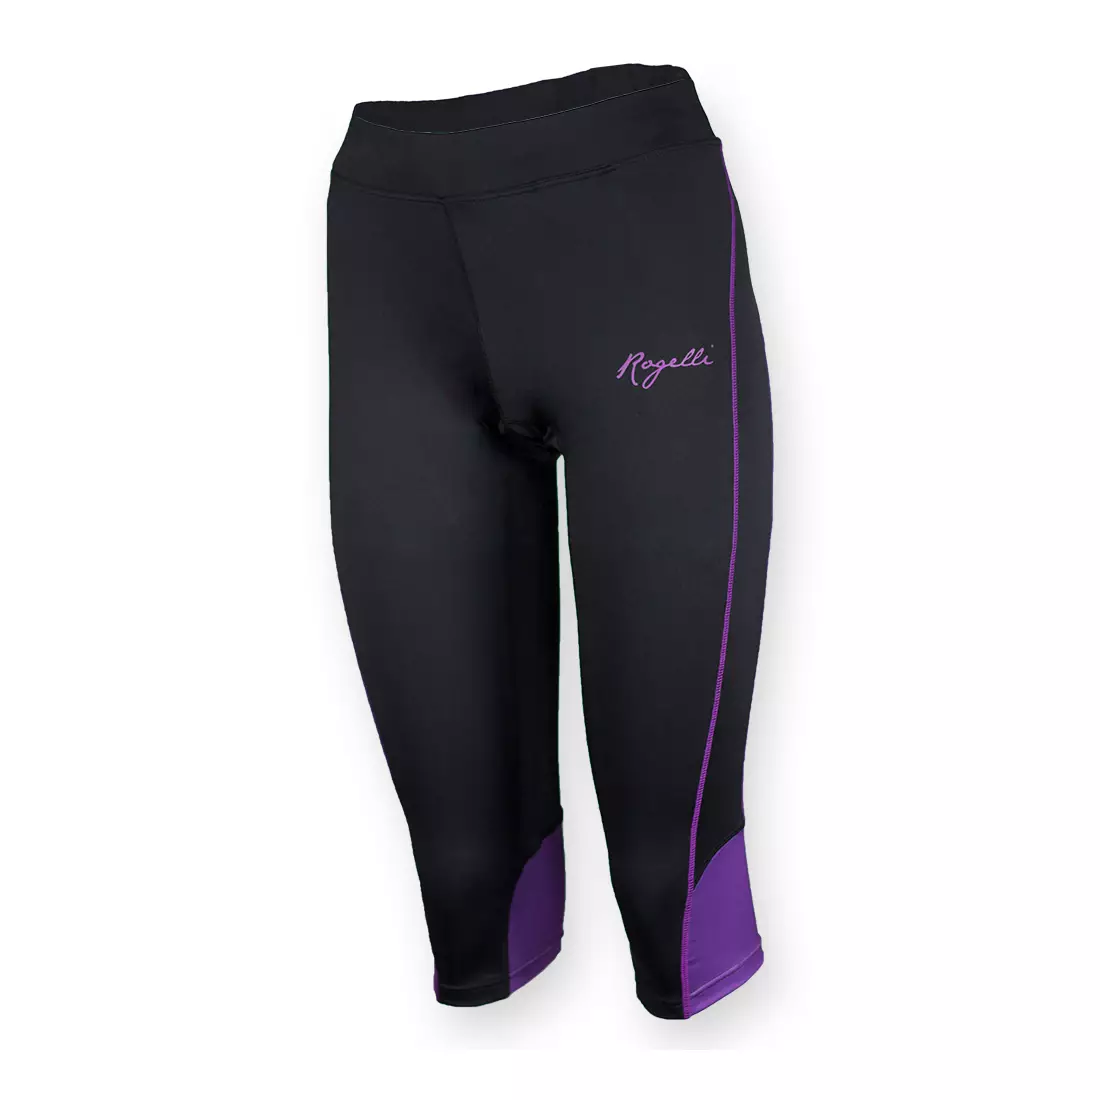 Pantaloni scurți de alergare damă ROGELLI SUEZ 840.743, picior 3/4, negru și violet